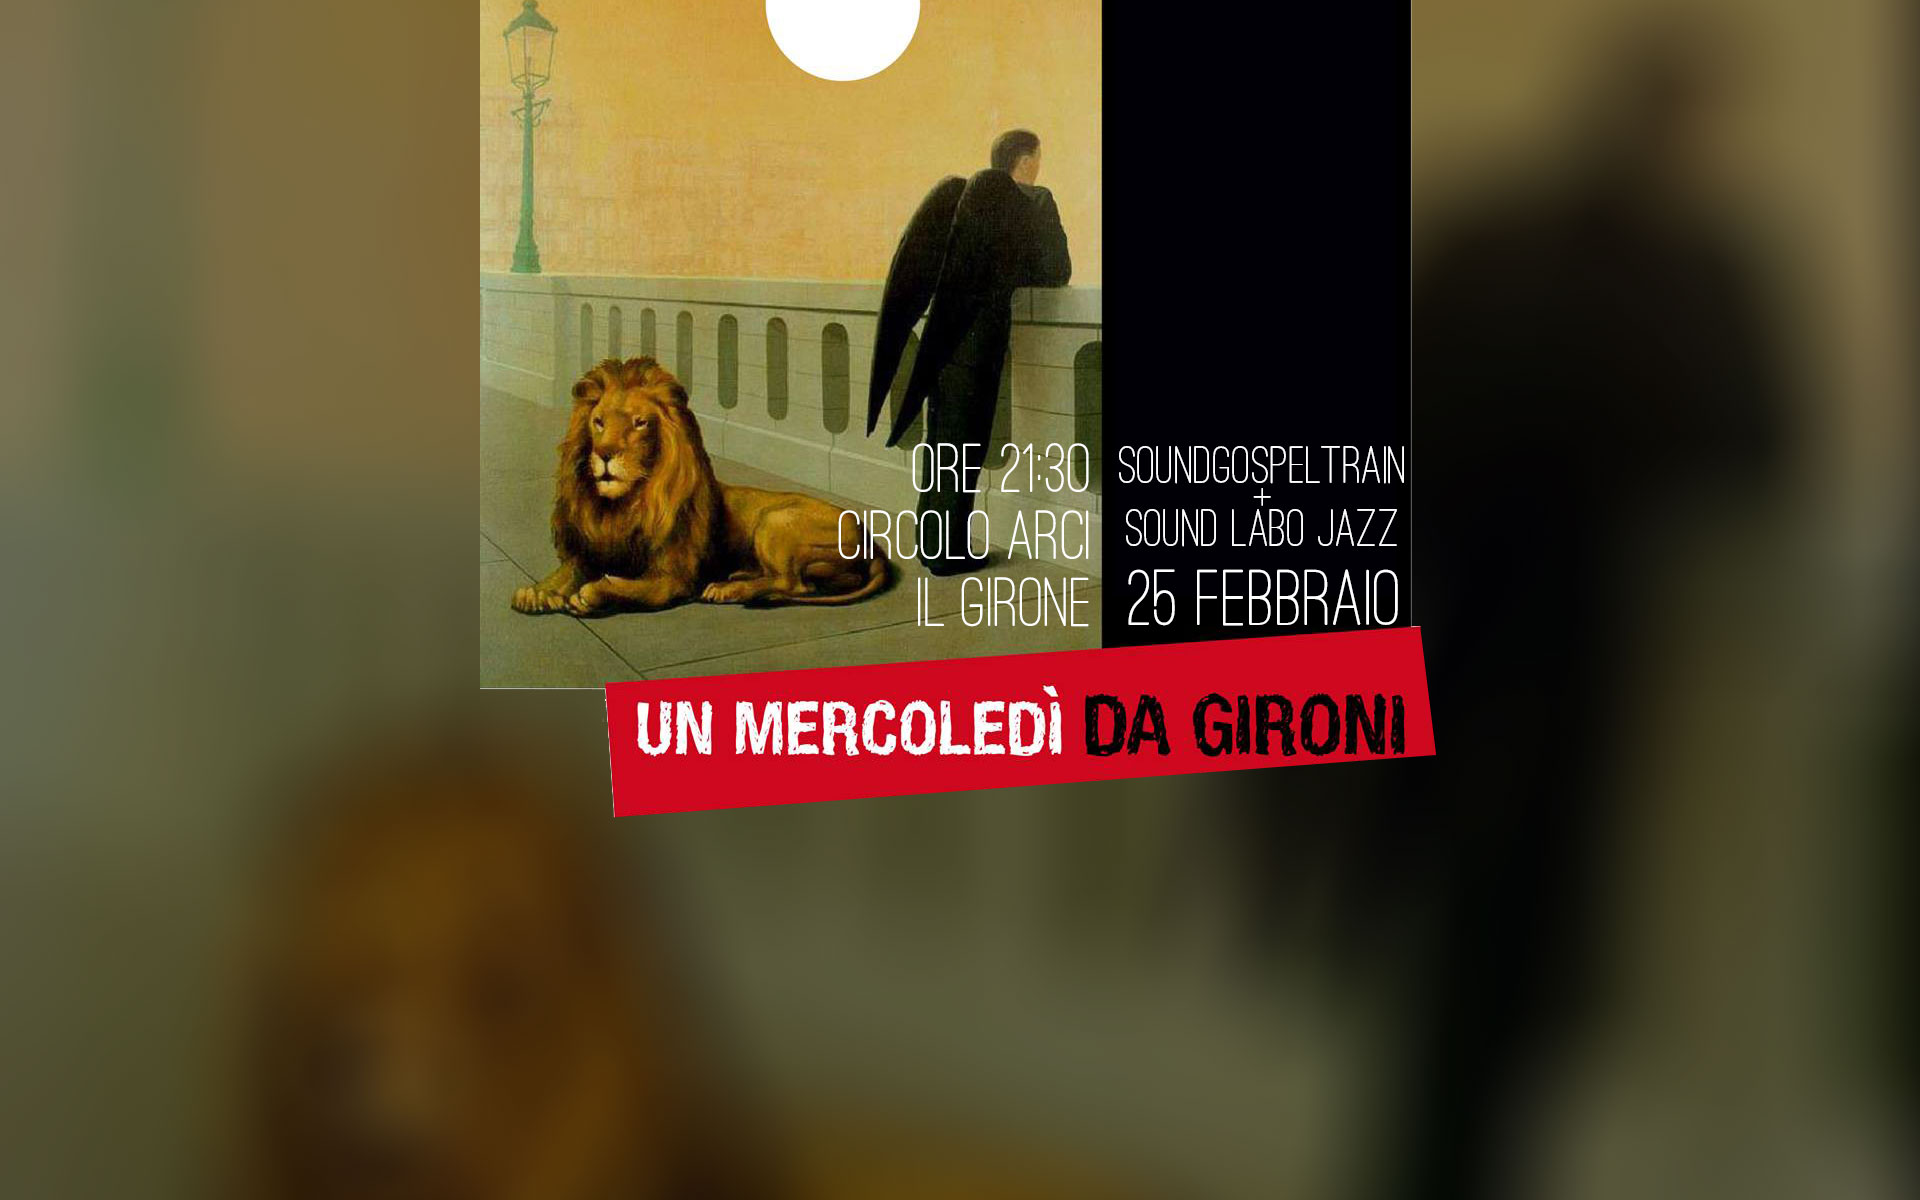 SoundGospelTrain e Sound Labo Jazz live al Mercoledì da Gironi